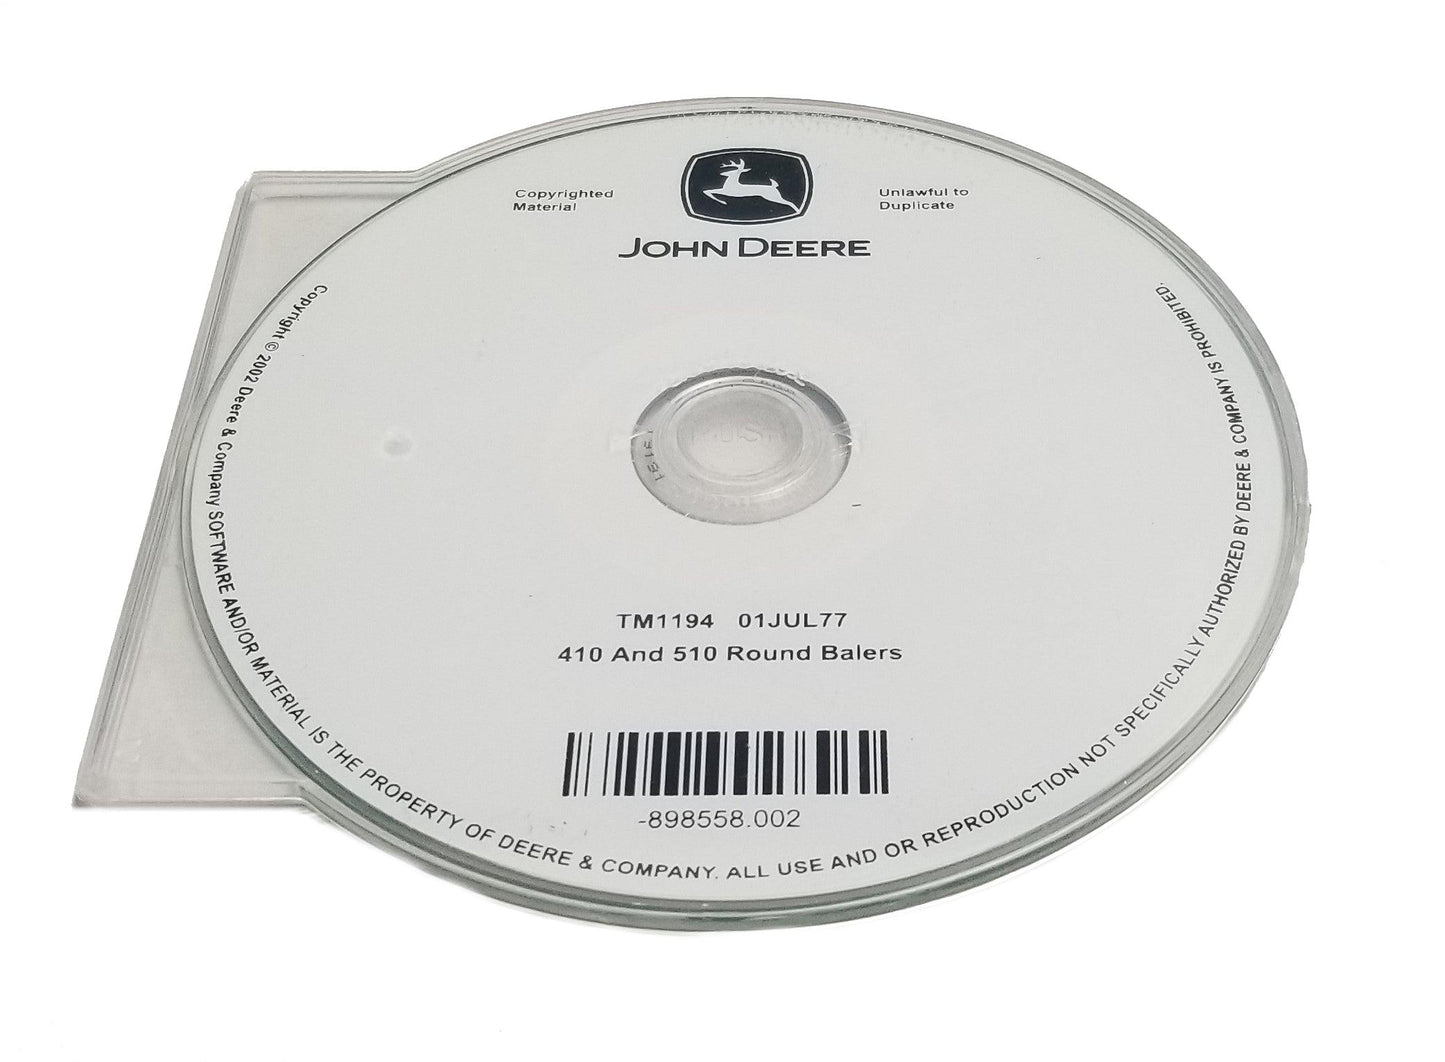 John Deere 410/510 Round Balers Technical CD Manual - TM1194CD